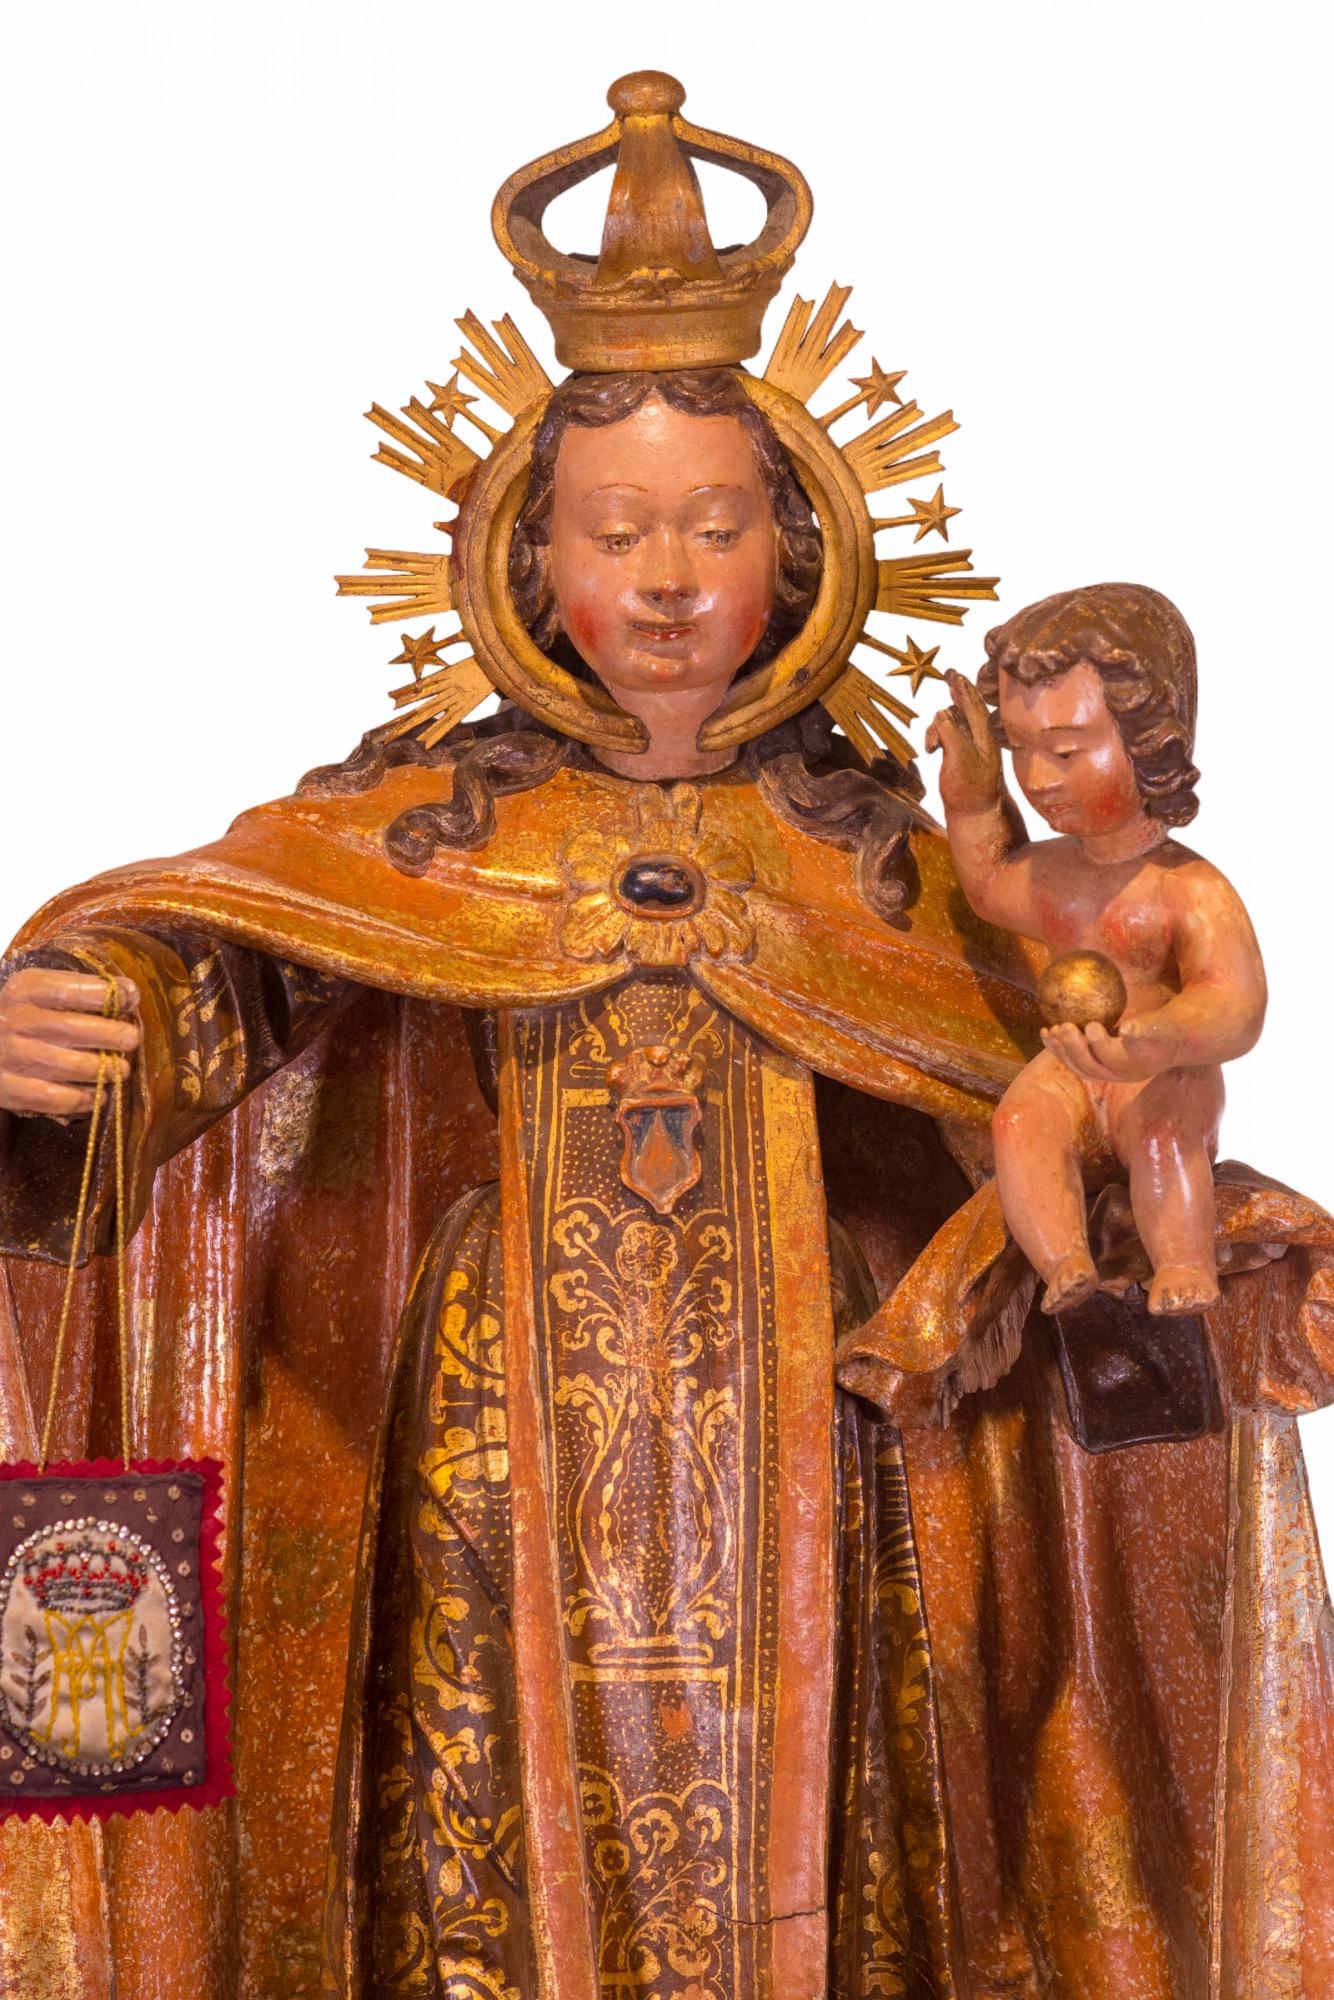 sculpture espagnole du XVIe siècle en bois sculpté, doré et polychromé, représentant Notre-Dame du Mont Carmel. Elle représente la Sainte Vierge Marie dans son rôle de patronne de l'Ordre des Carmes. Elle est restée au-dessus de l'autel principal